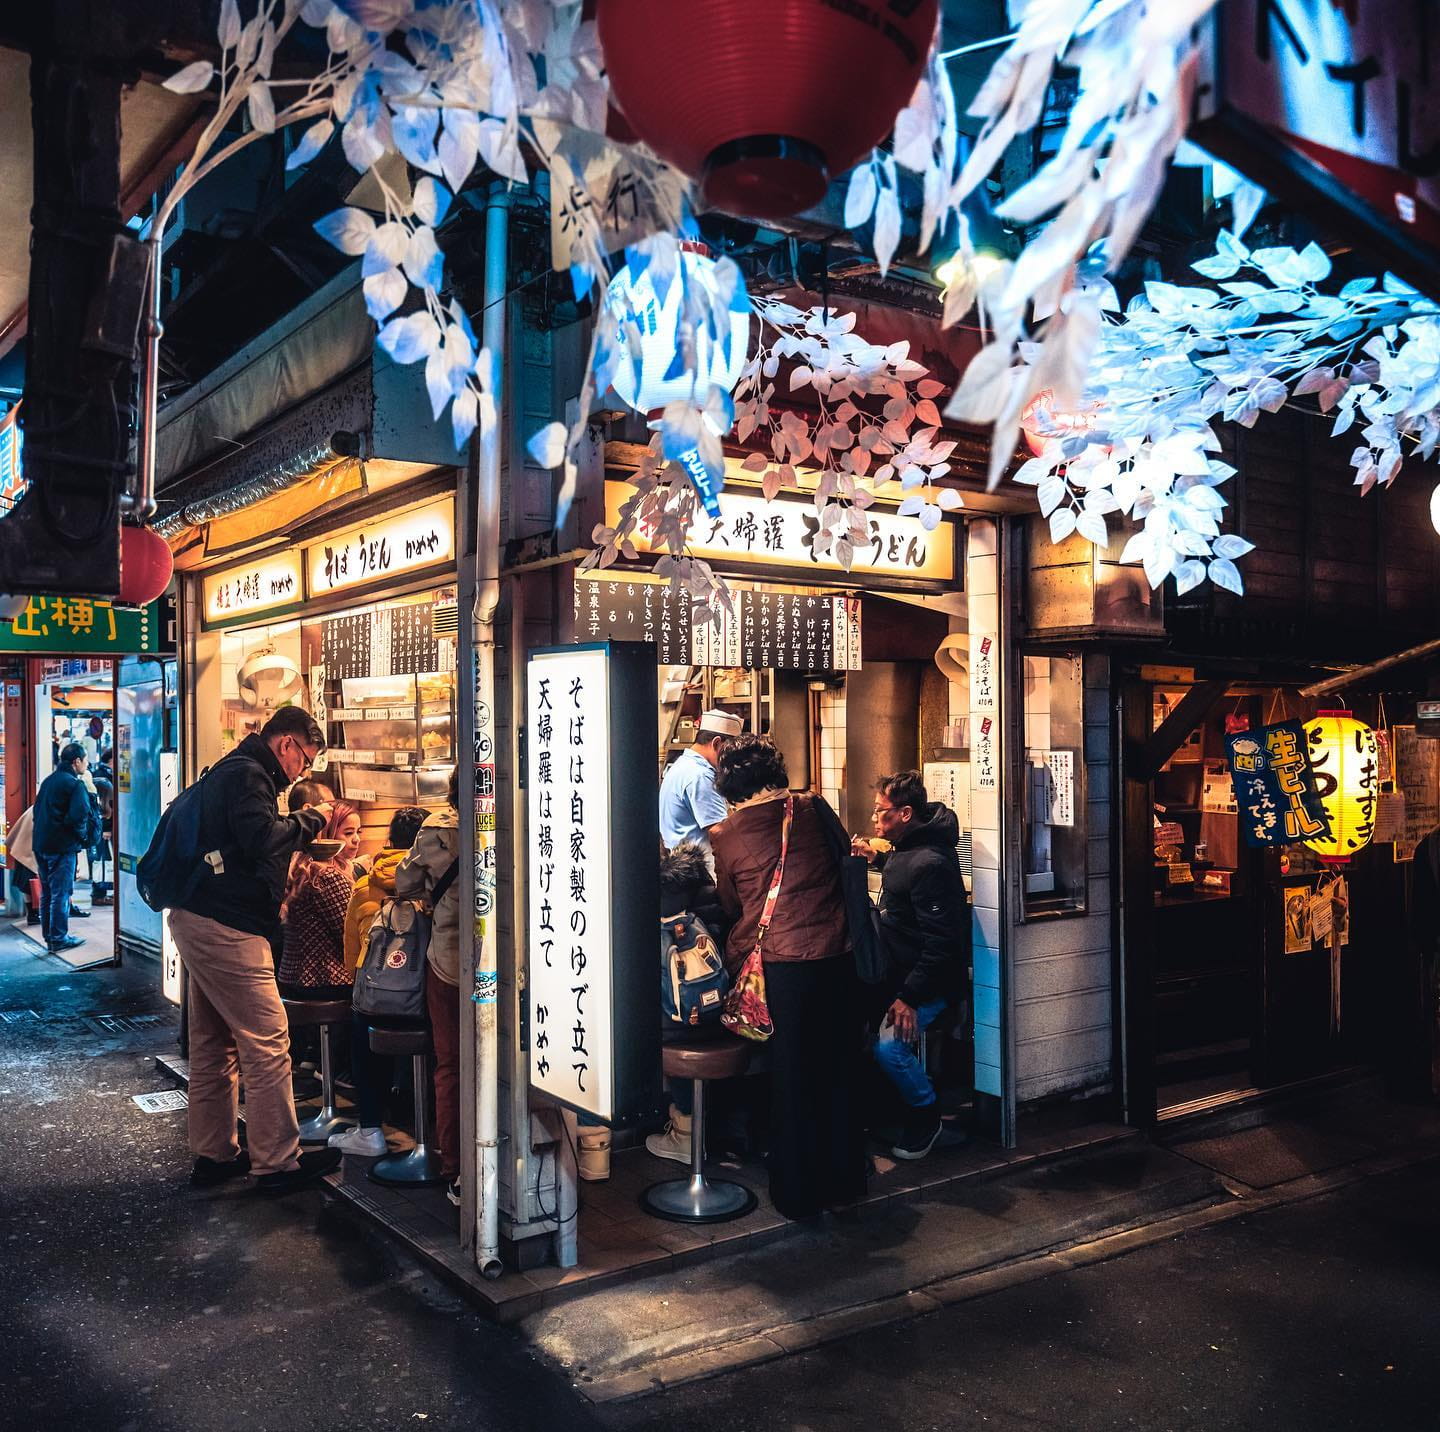 Concurso Japan Lightroom fotografias editadas antes y despues